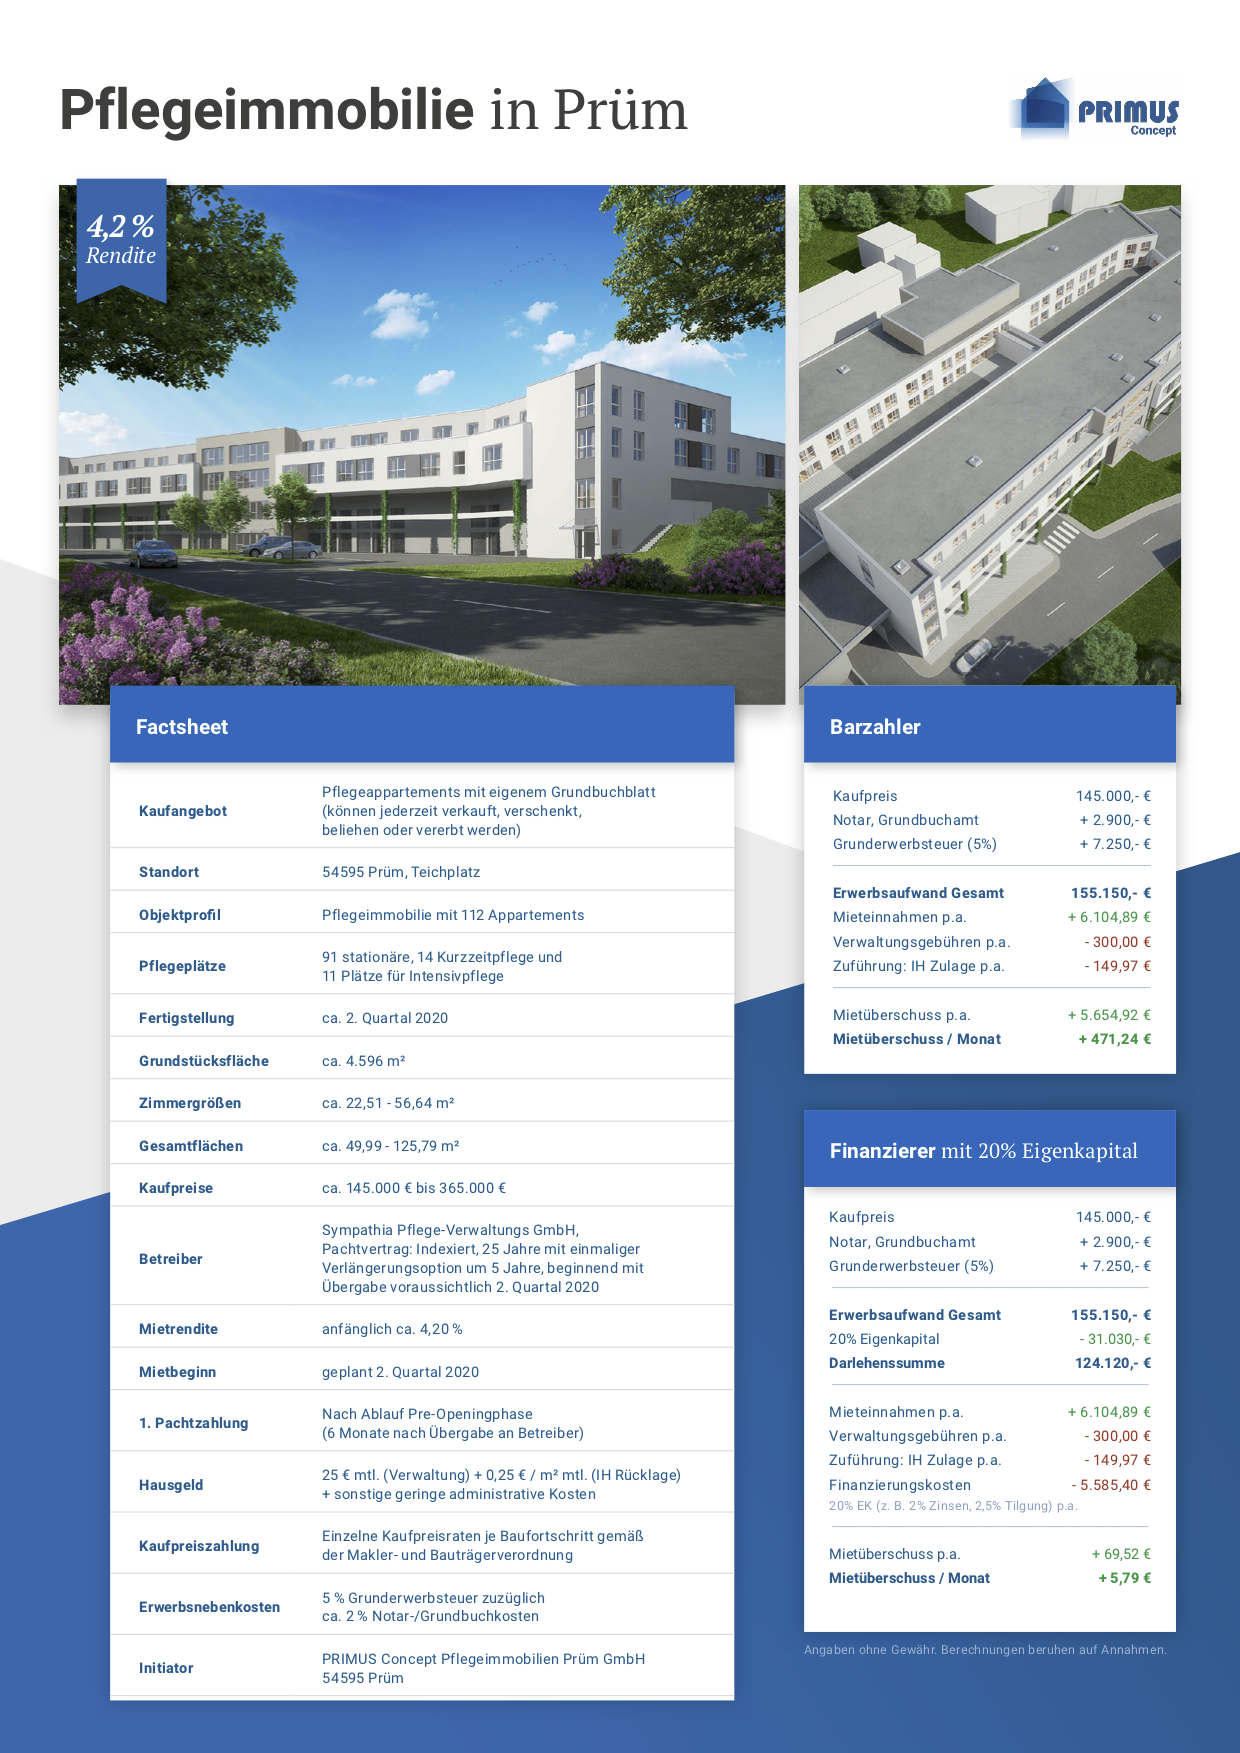 Hier sehen Sie das Factsheet (Voderseite) mit wichtigen Informationen zur Pflegeimmobilie in Prüm.